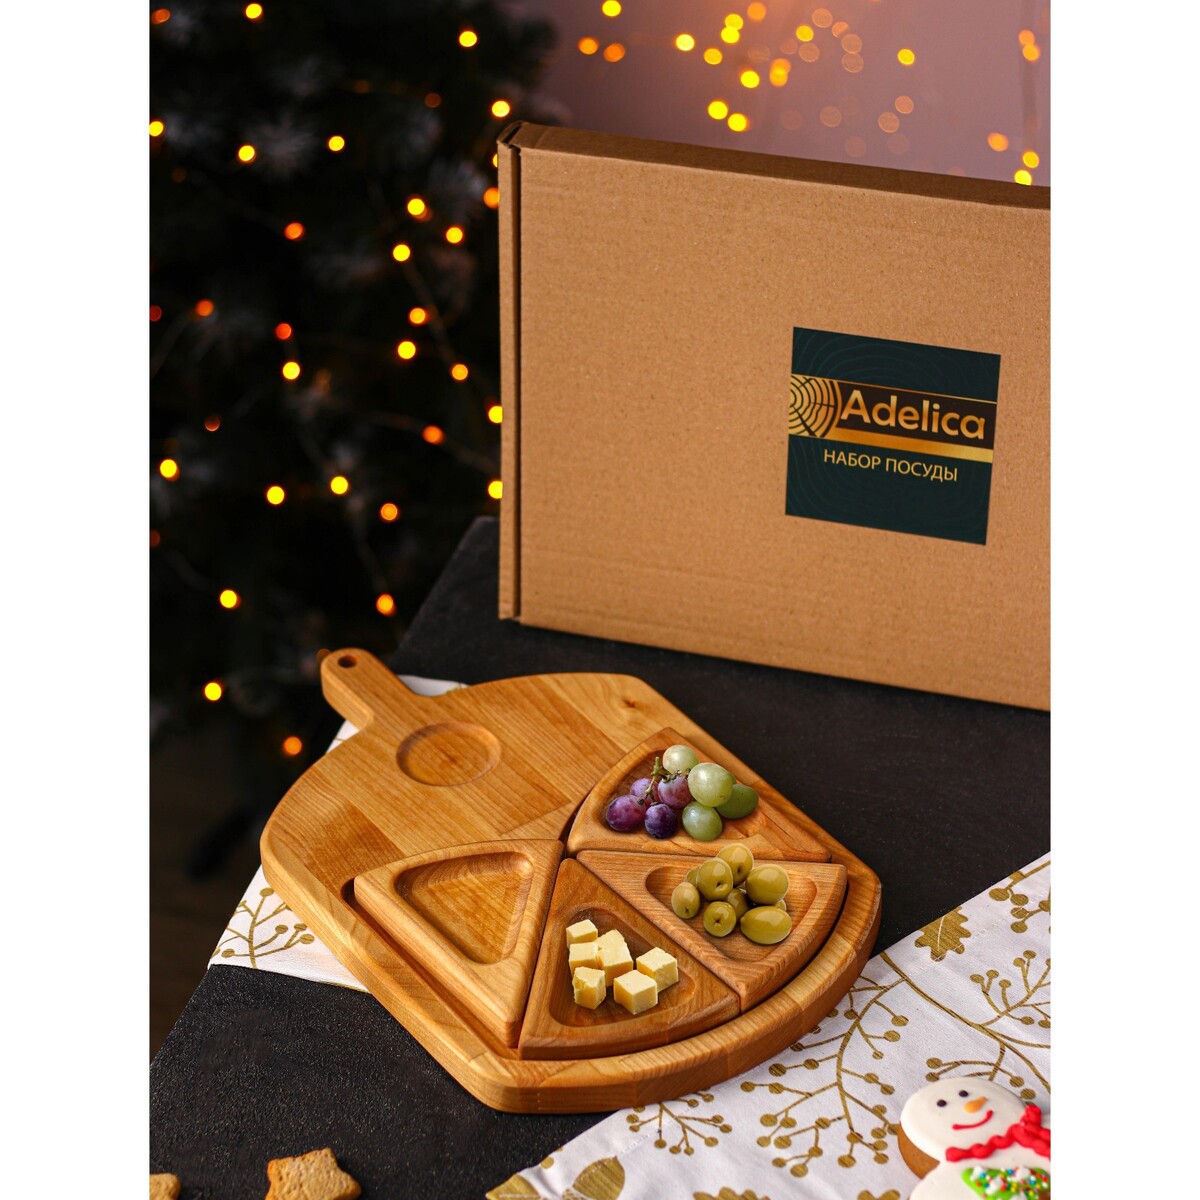 Подарочный набор деревянной посуды adelica набор подвесок на елку в деревянной коробке